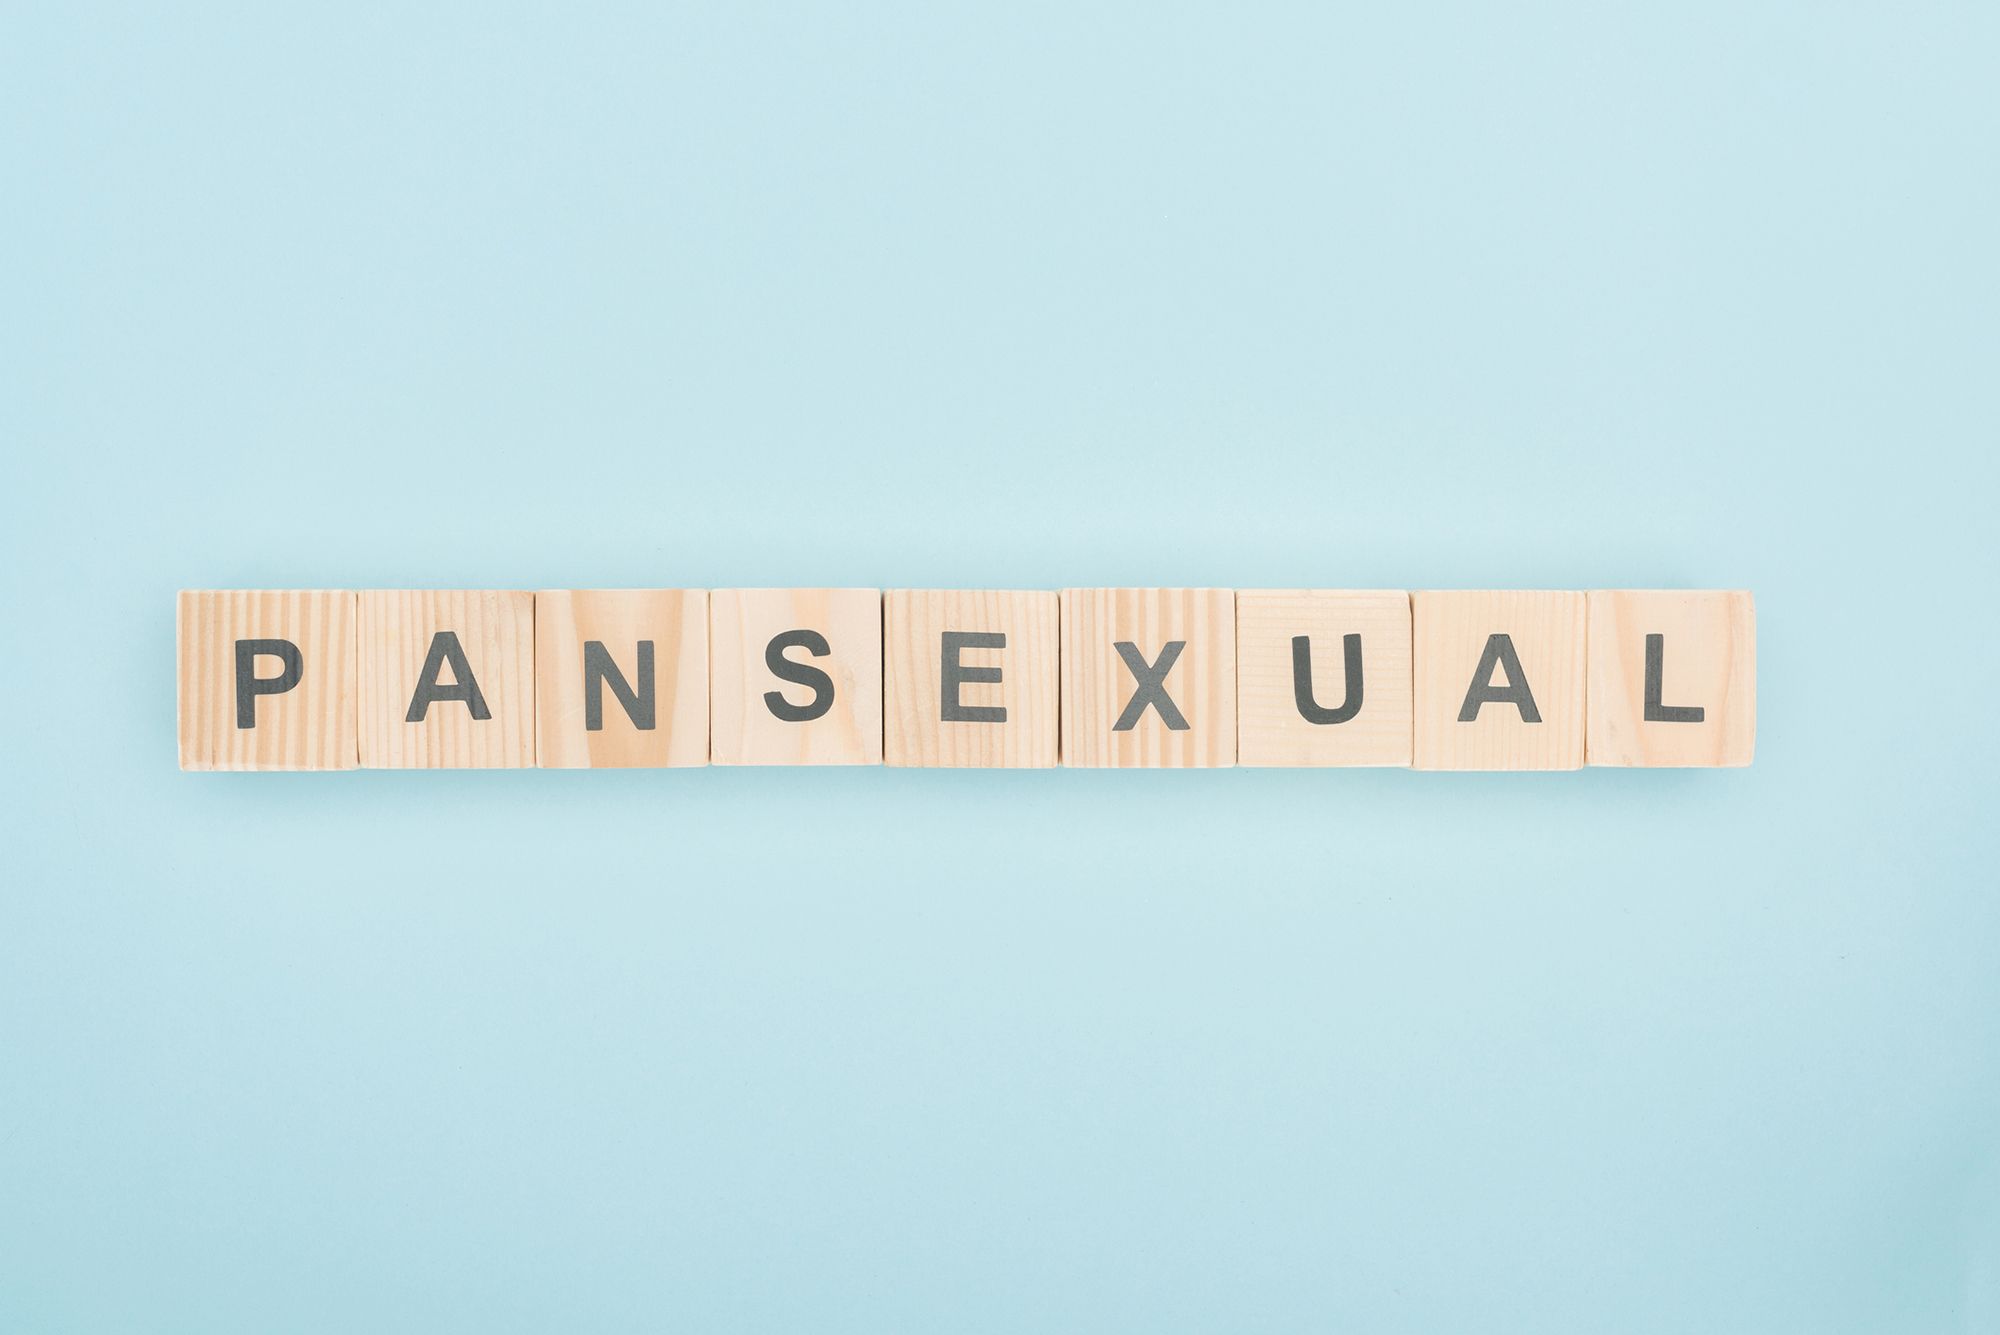 Holzbuchstaben mit der Aufschrift "Pansexual" vor hellblauem Hintergrund